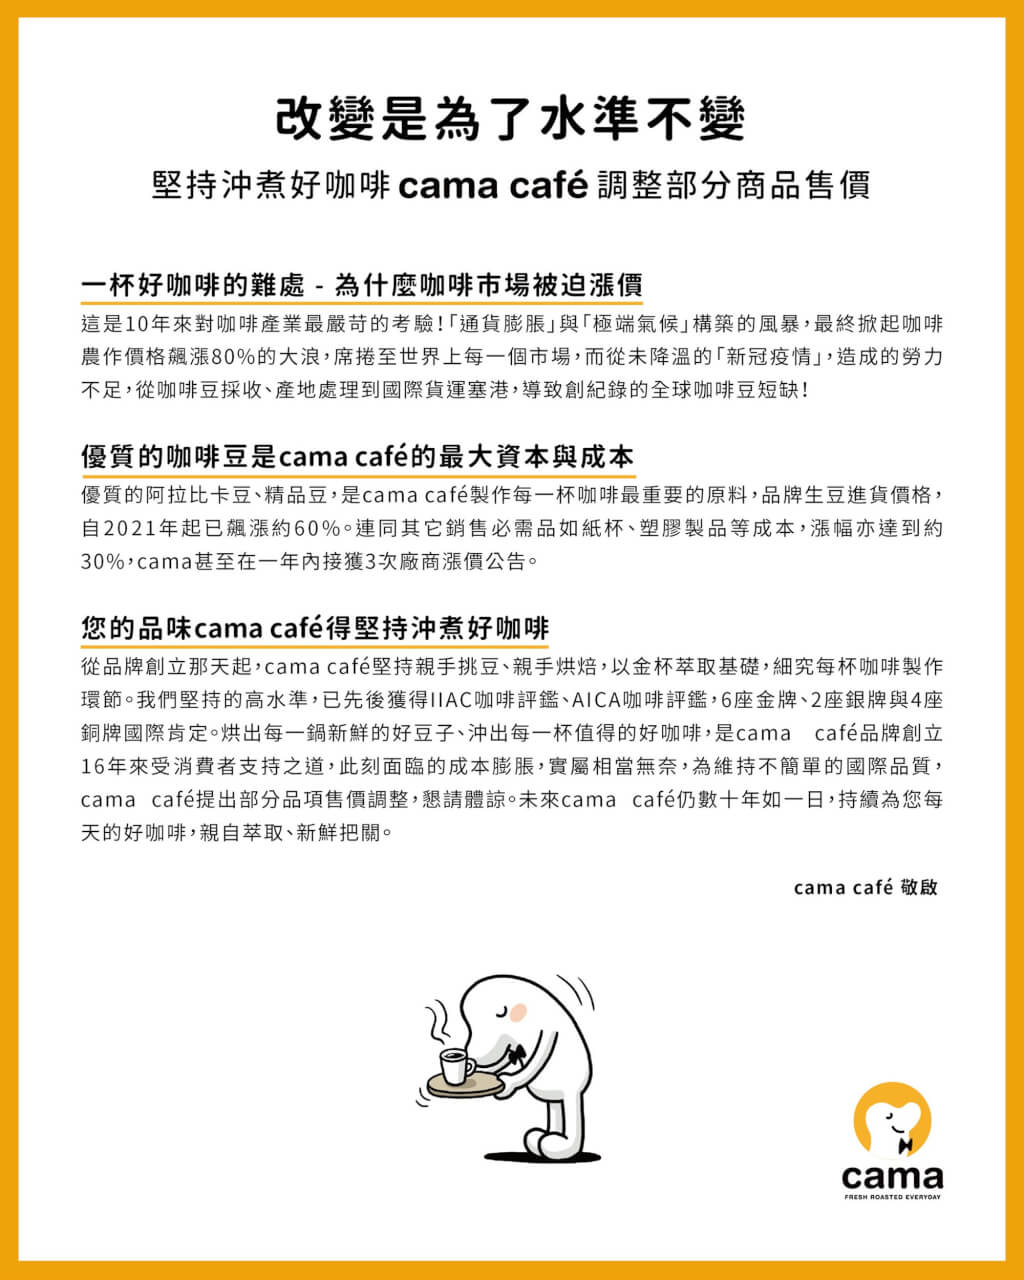 cama跟進咖啡漲價潮26日起一杯黑咖啡漲10元【獨家】 | 產經| 中央社CNA